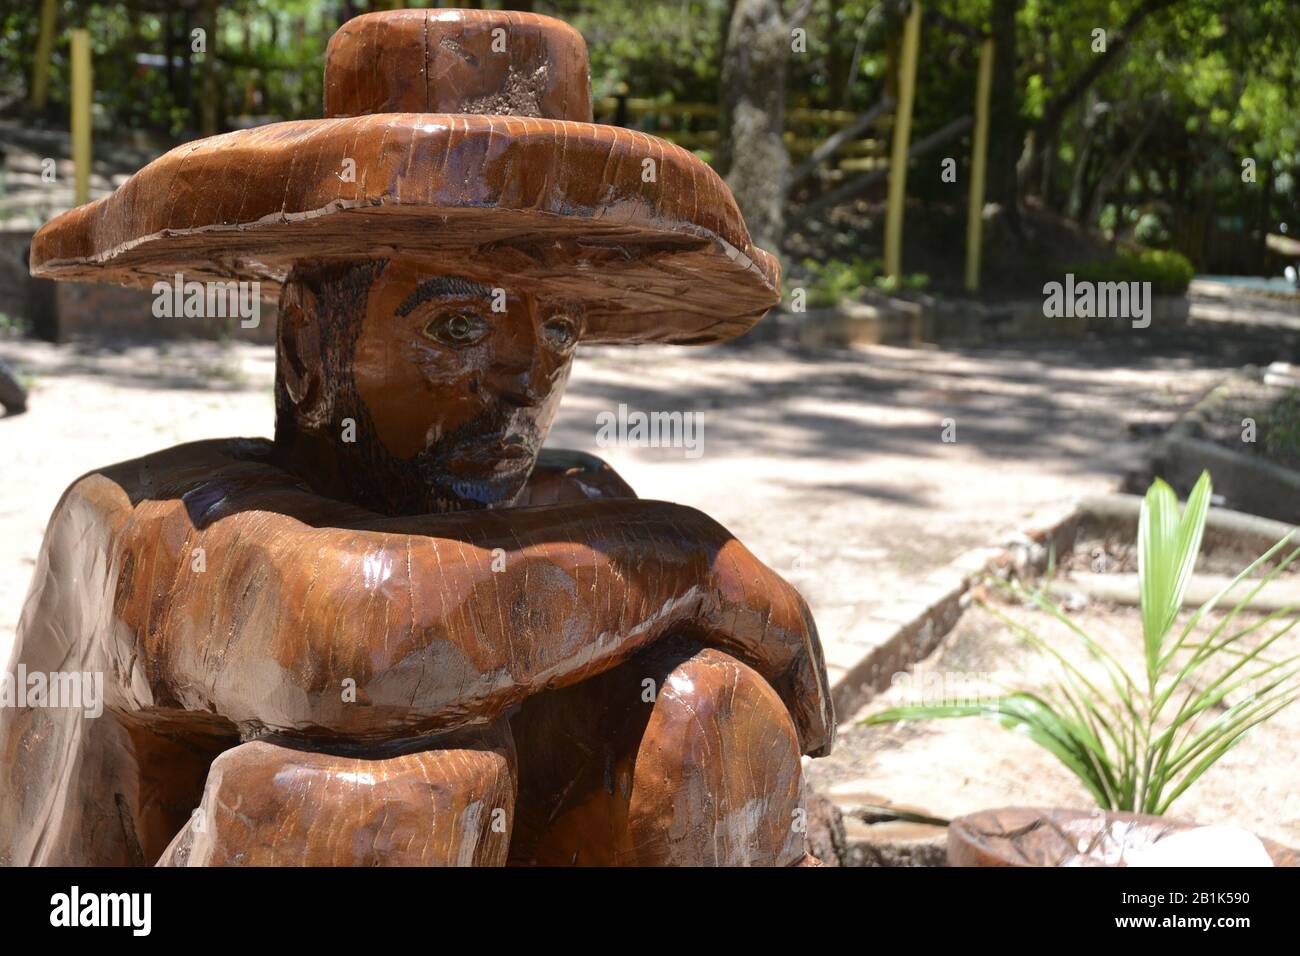 Uomo di legno. Artigianato di legno duro fatto a mano, uomo in cappello seduto e guardando avanti, con vegetazione e sfondo sfocato, Brasile, Sud America Foto Stock